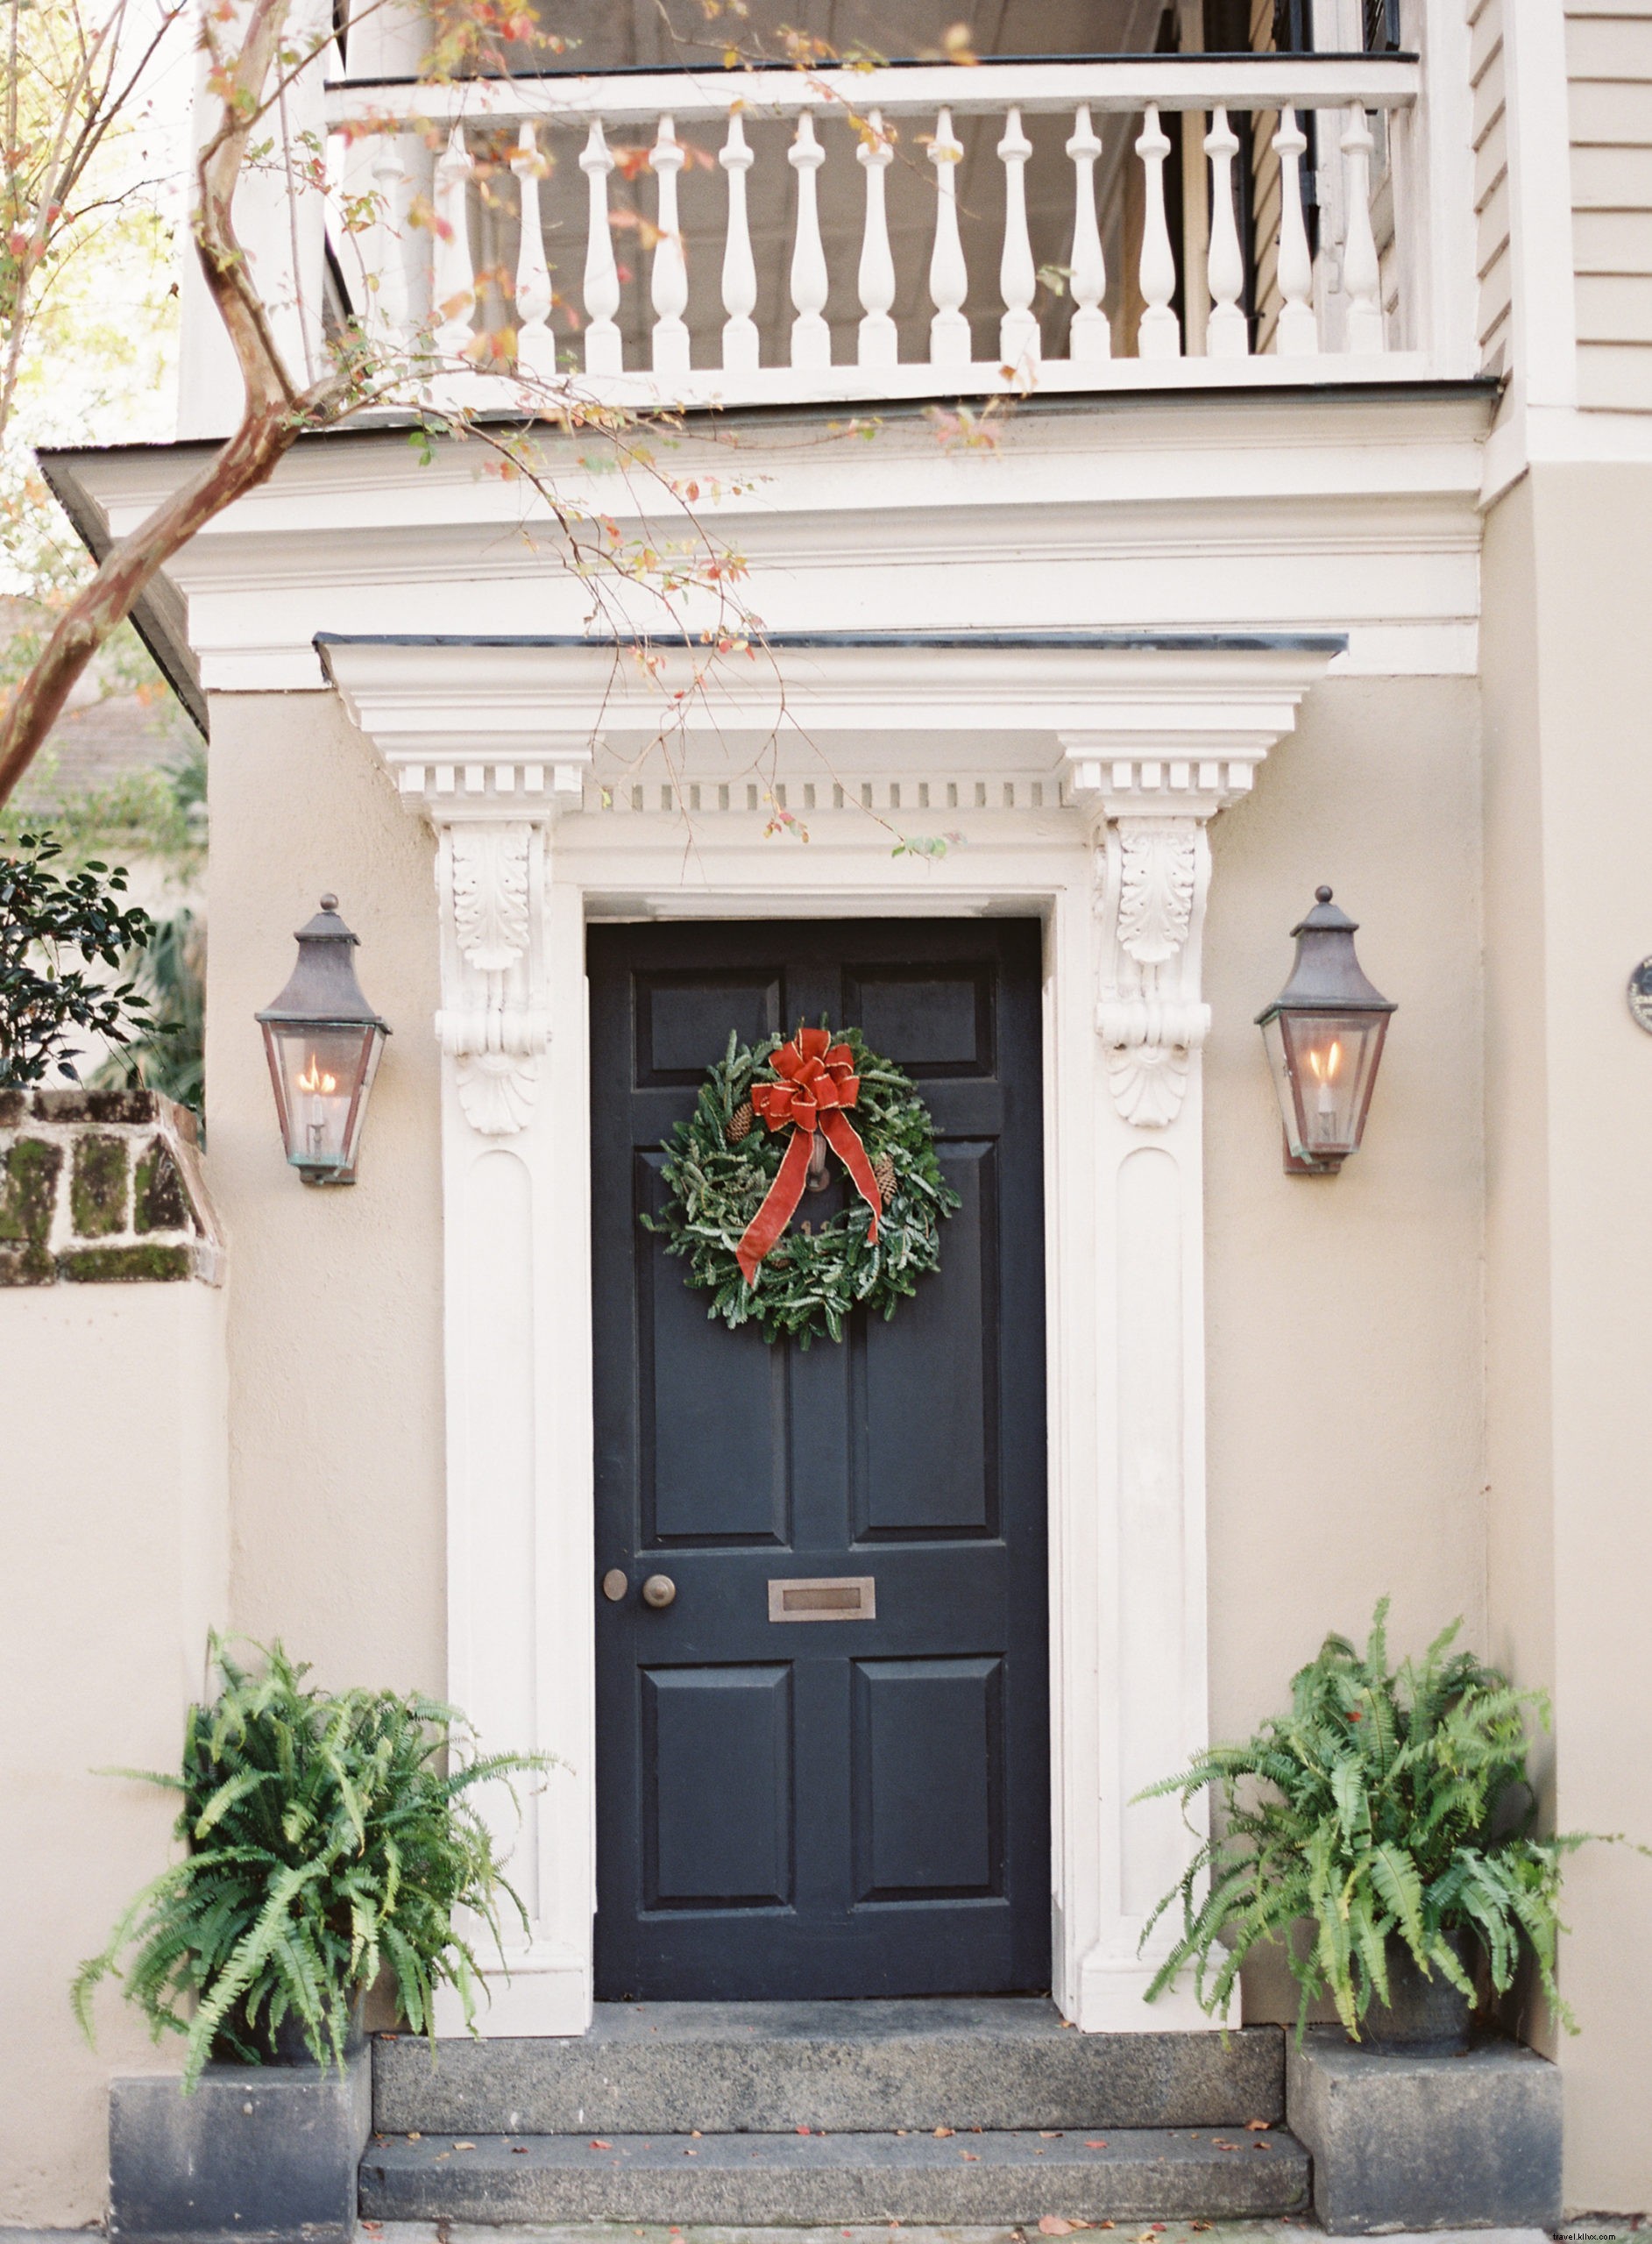 10 fotos que te harán soñar con pasar la Navidad en Charleston 